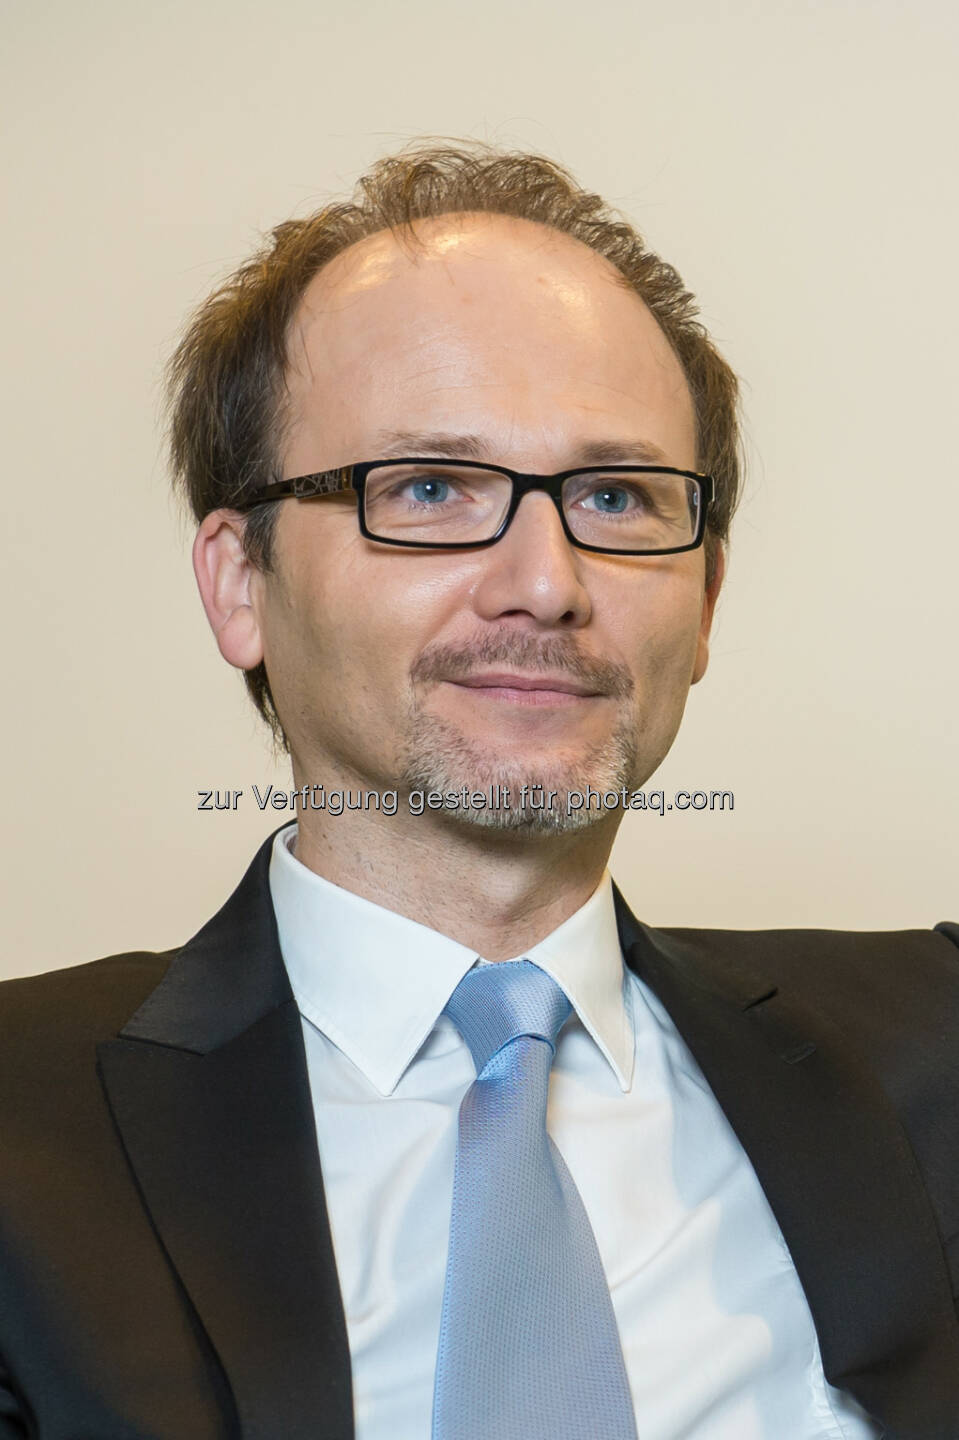 CEO Rainer Schamberger, Payment Services Austria GmbH: Schallmauer durchbrochen - 9 Mio. Bankomatkarten in Österreich